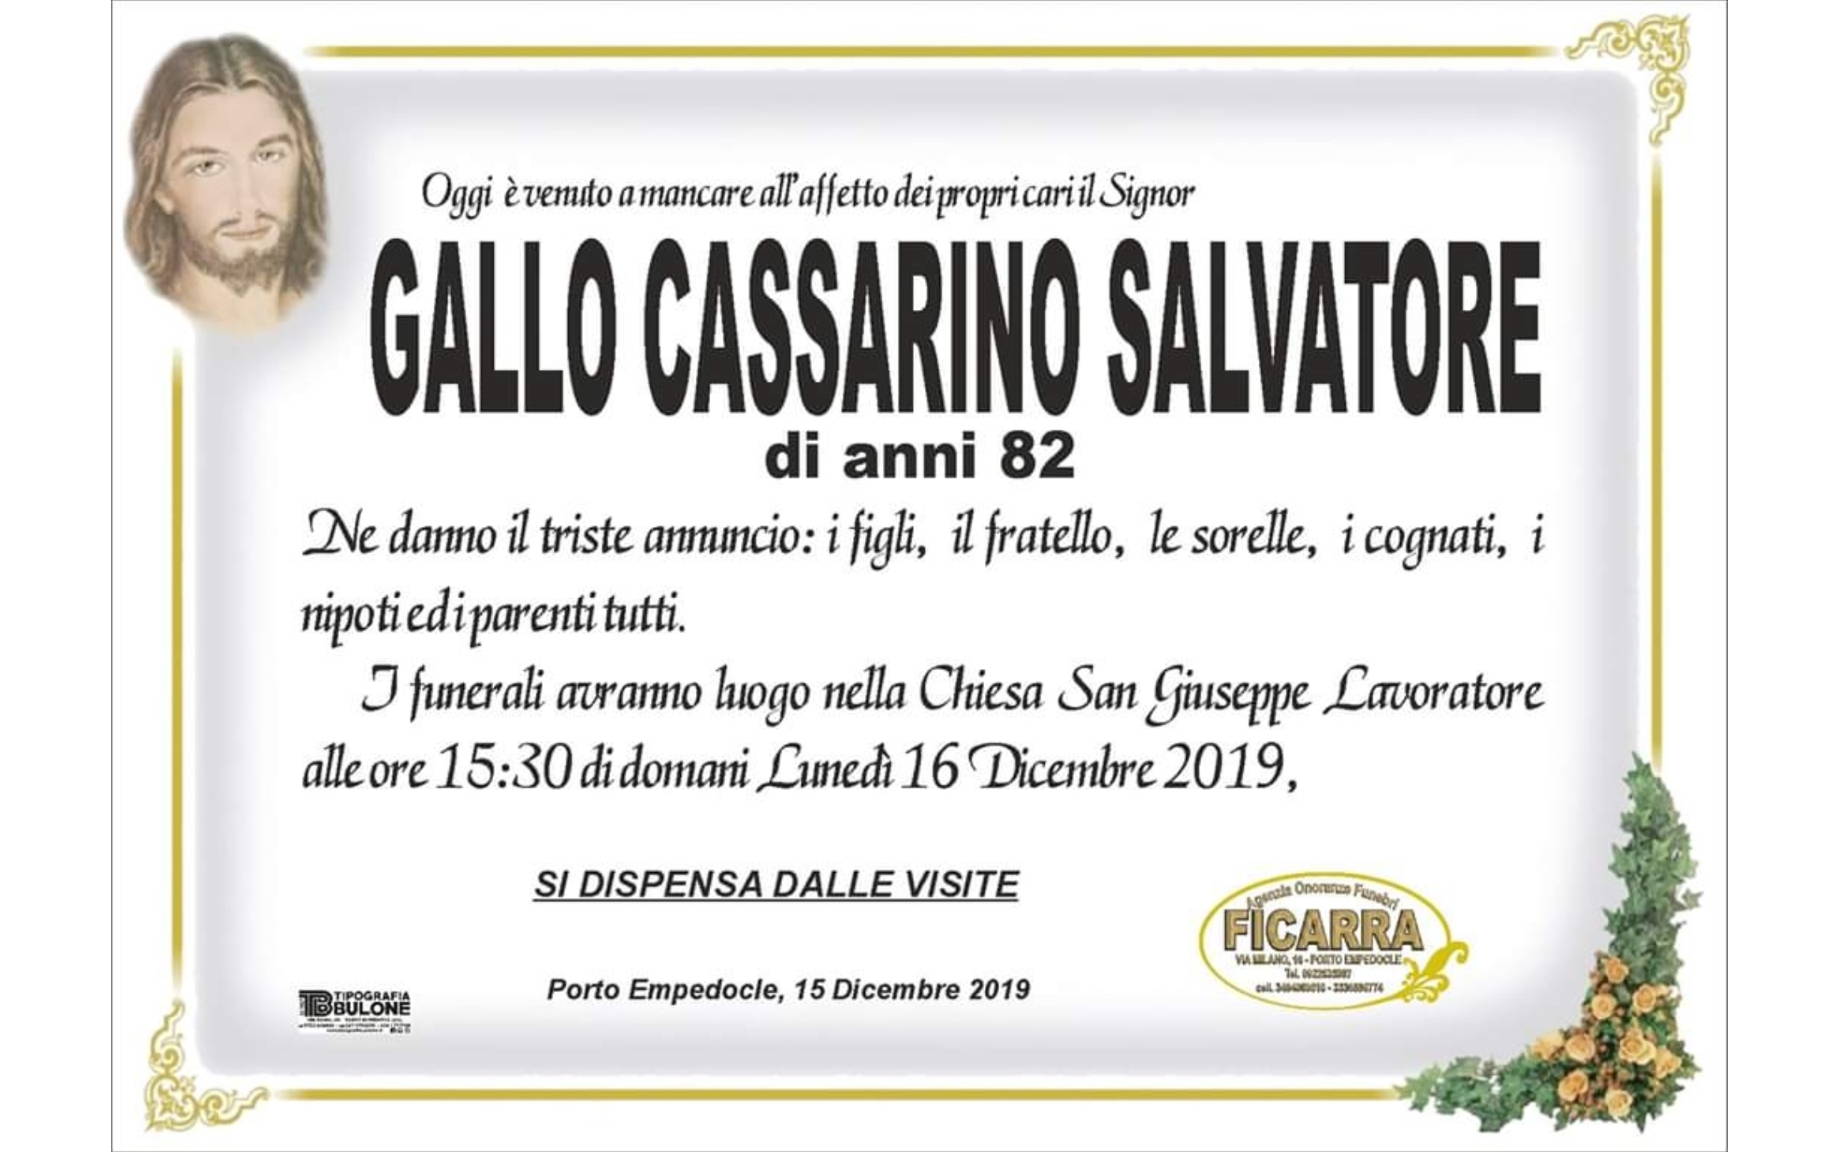 Salvatore Gallo Cassarino